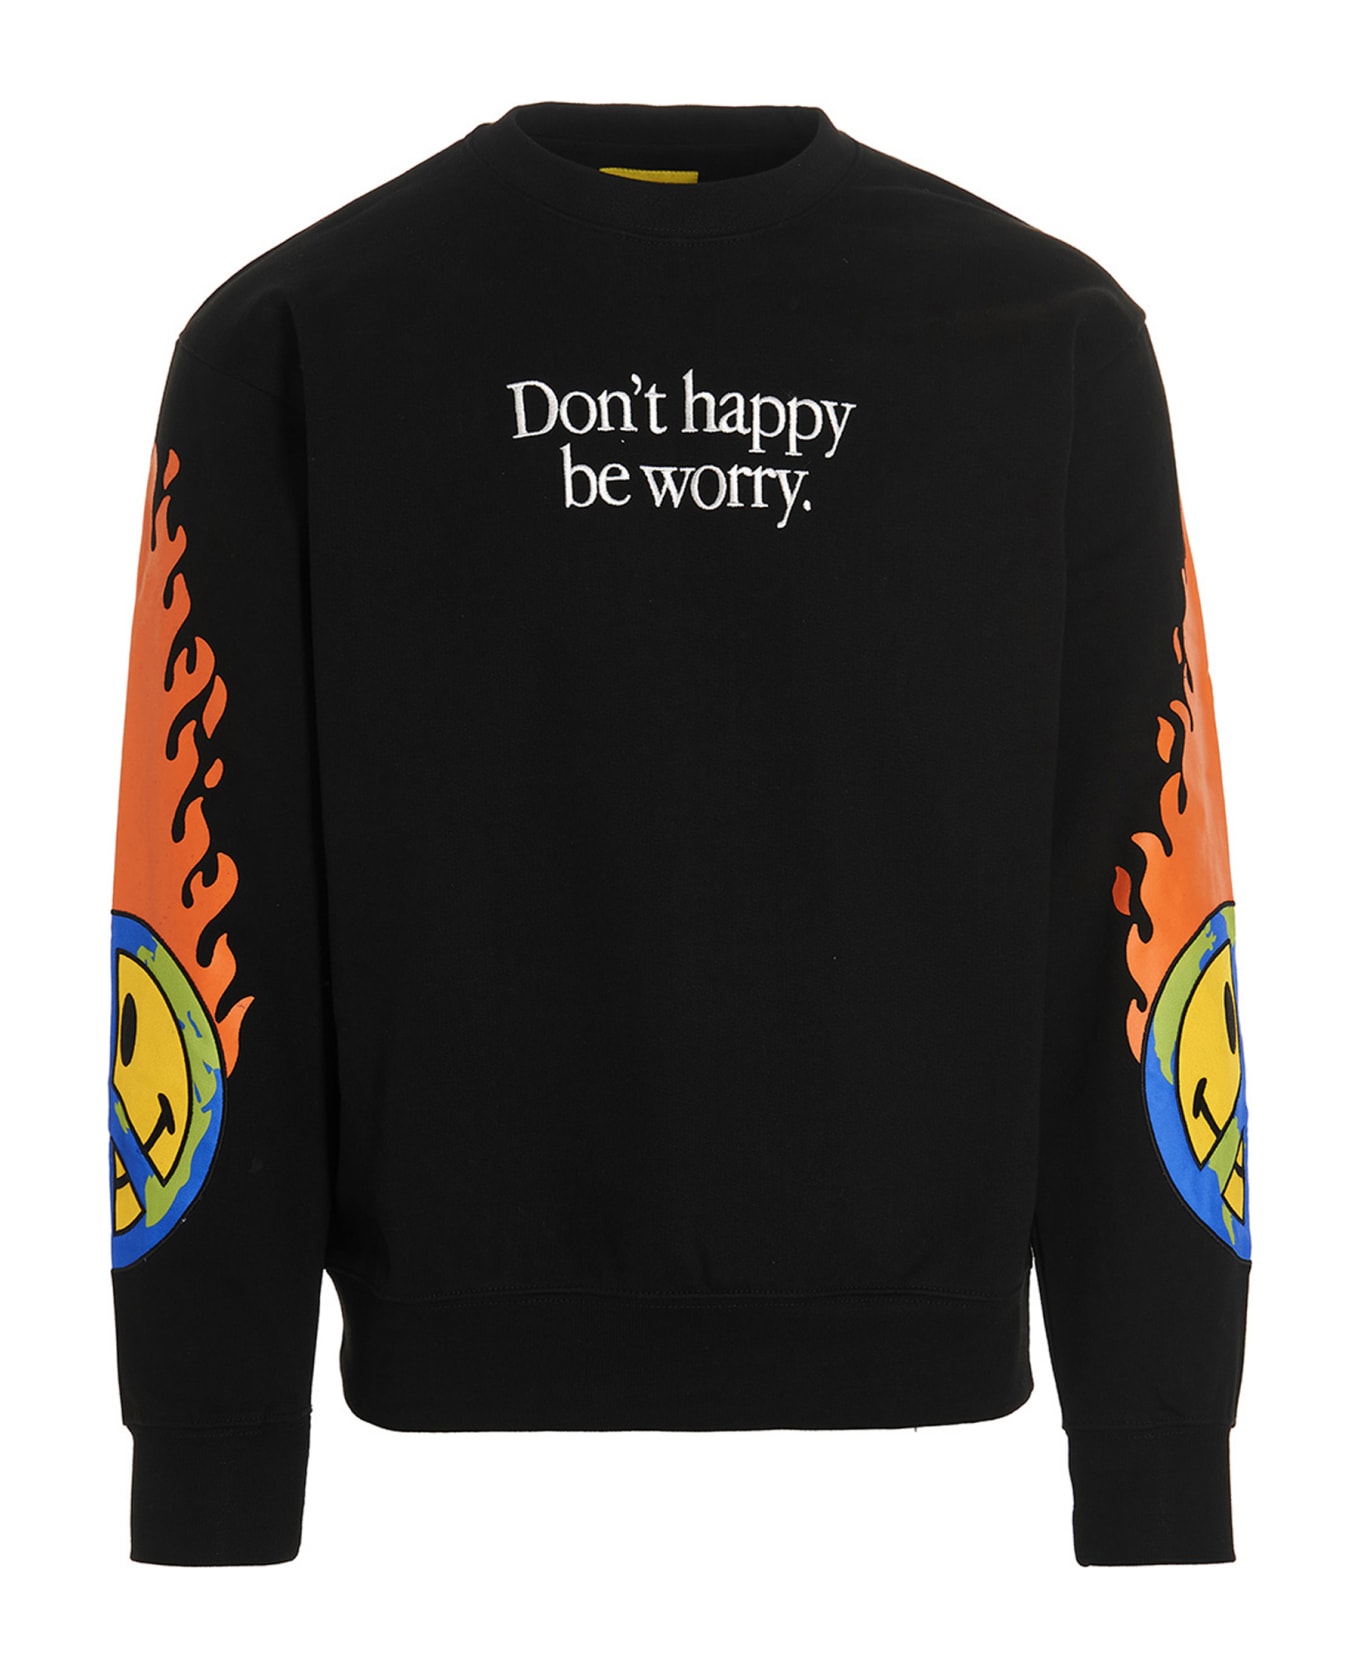 Market 'smiley Earth On Fire' Sweatshirt - BLACK